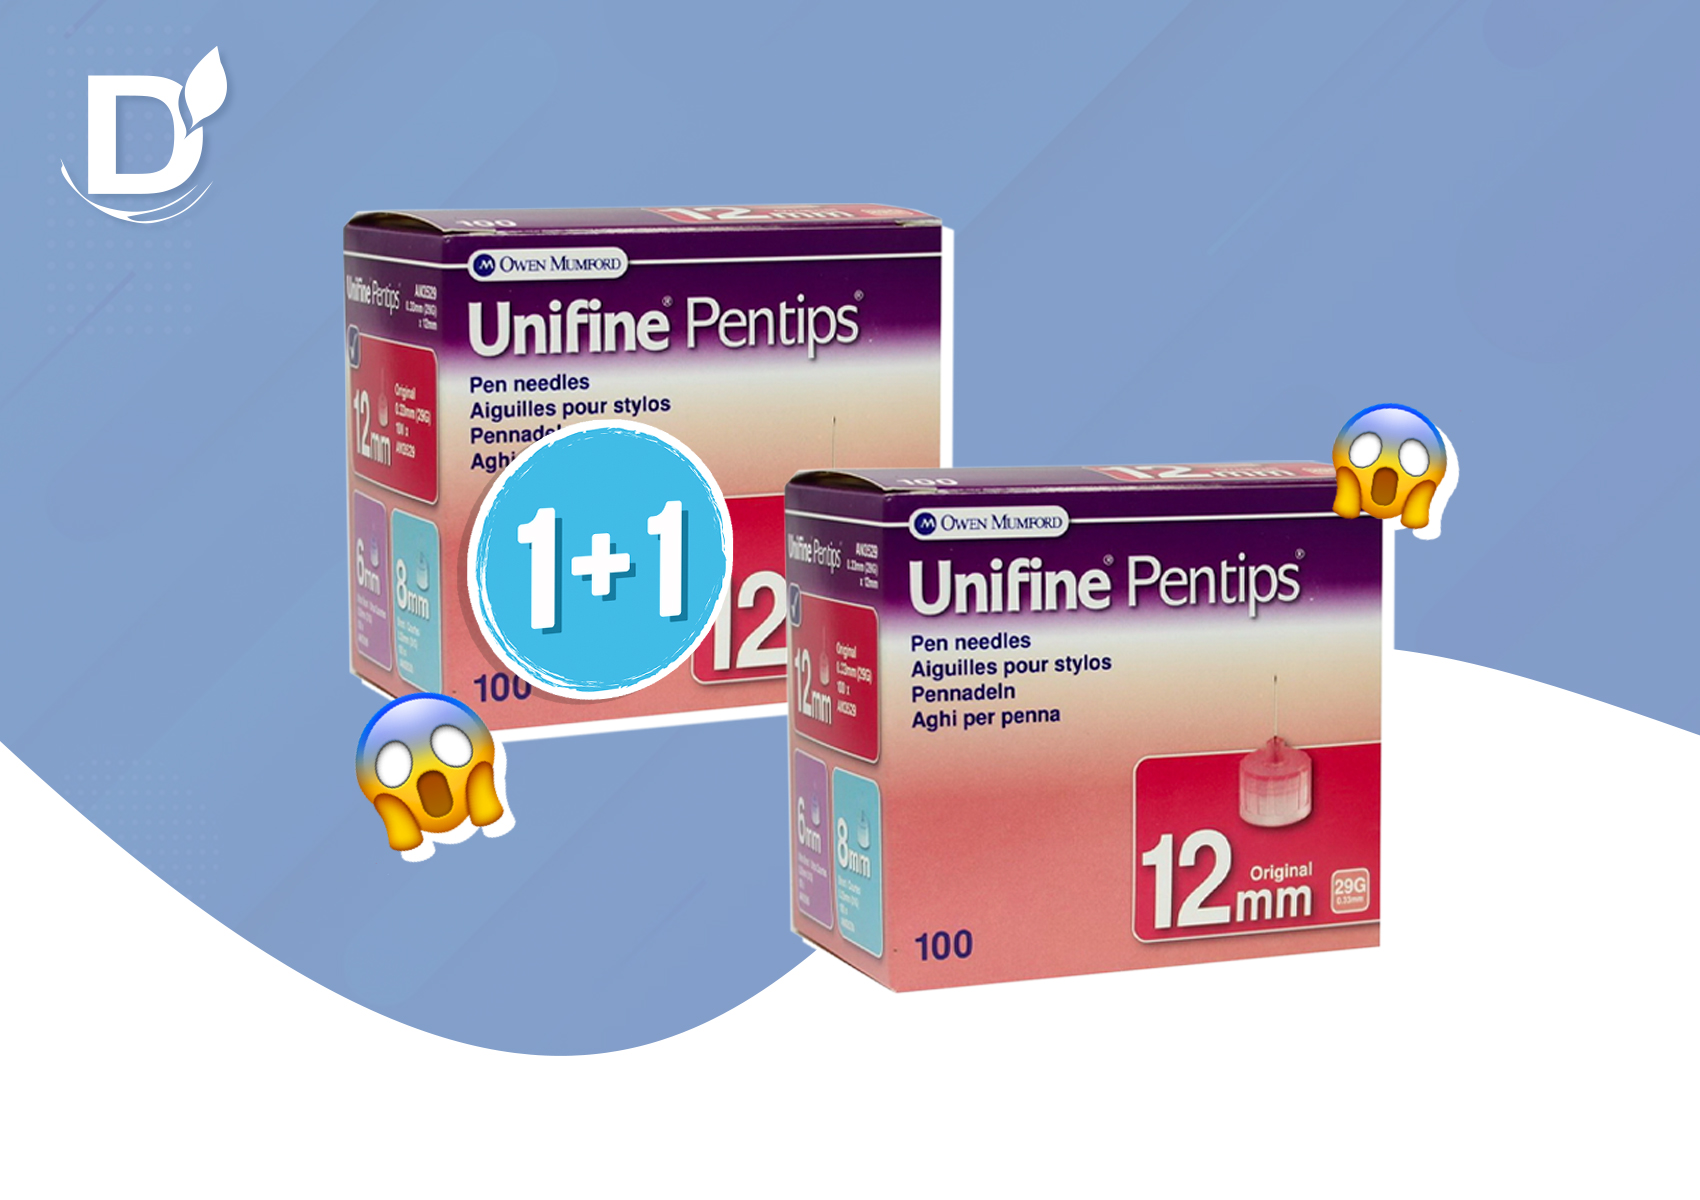 Акция на иглы Unifine Pentips: две пачки иголок по цене одной